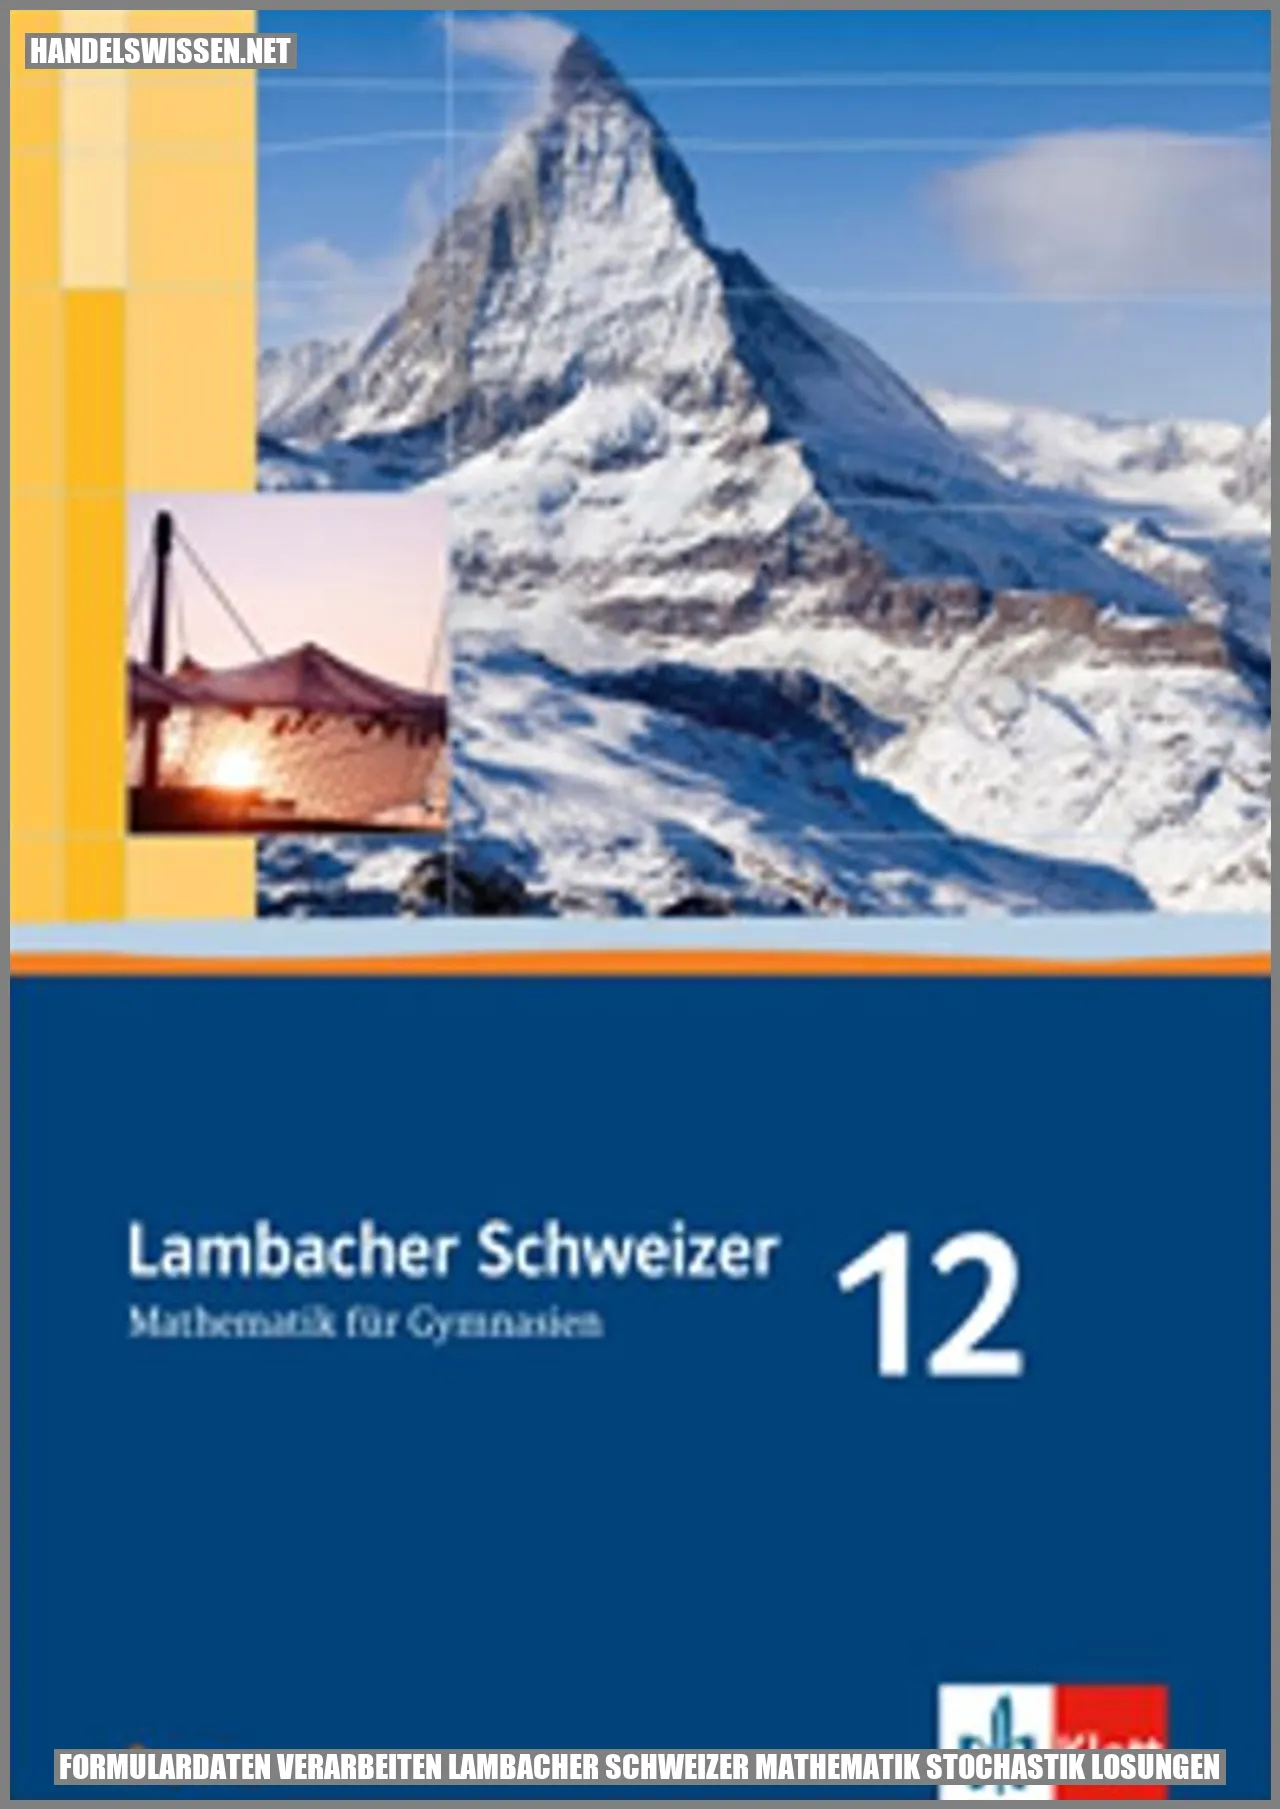 Formulardaten verarbeiten Lambacher Schweizer Mathematik Stochastik Lösungen